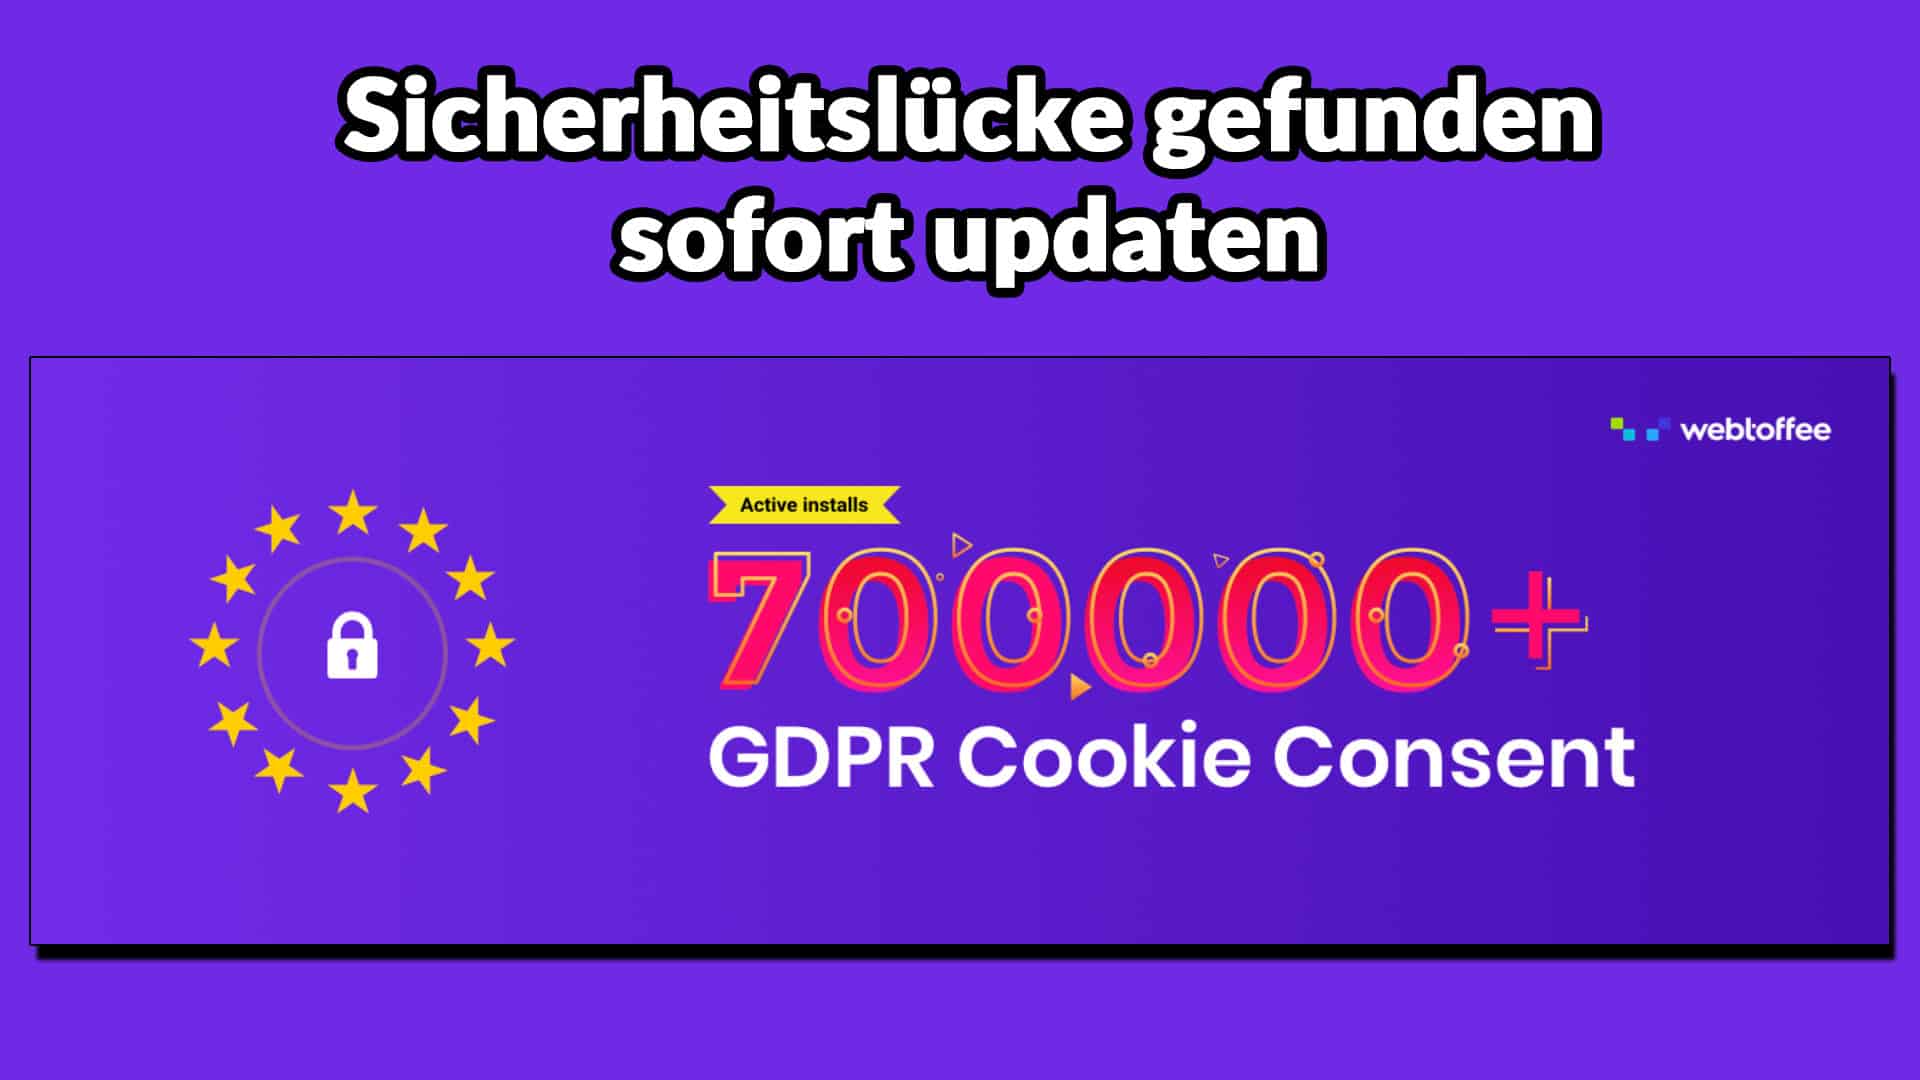 Sicherheitslücke bei GDPR Cookie Consent gefunden – sofort updaten